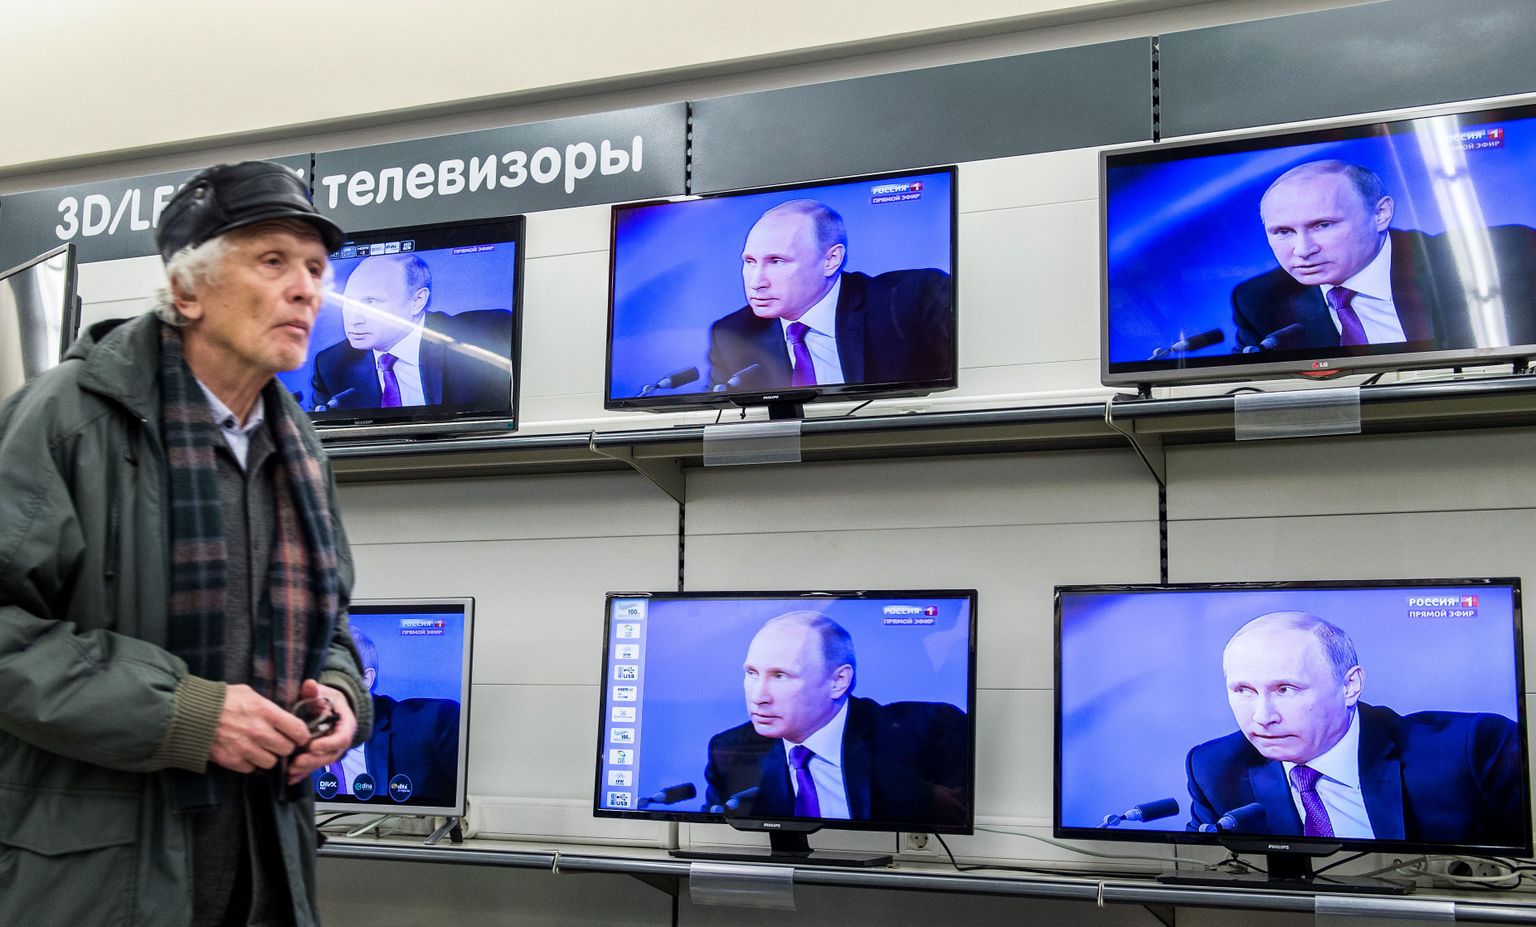 Venekeelne telekanal stardib Eestis juba selle aasta septembris.